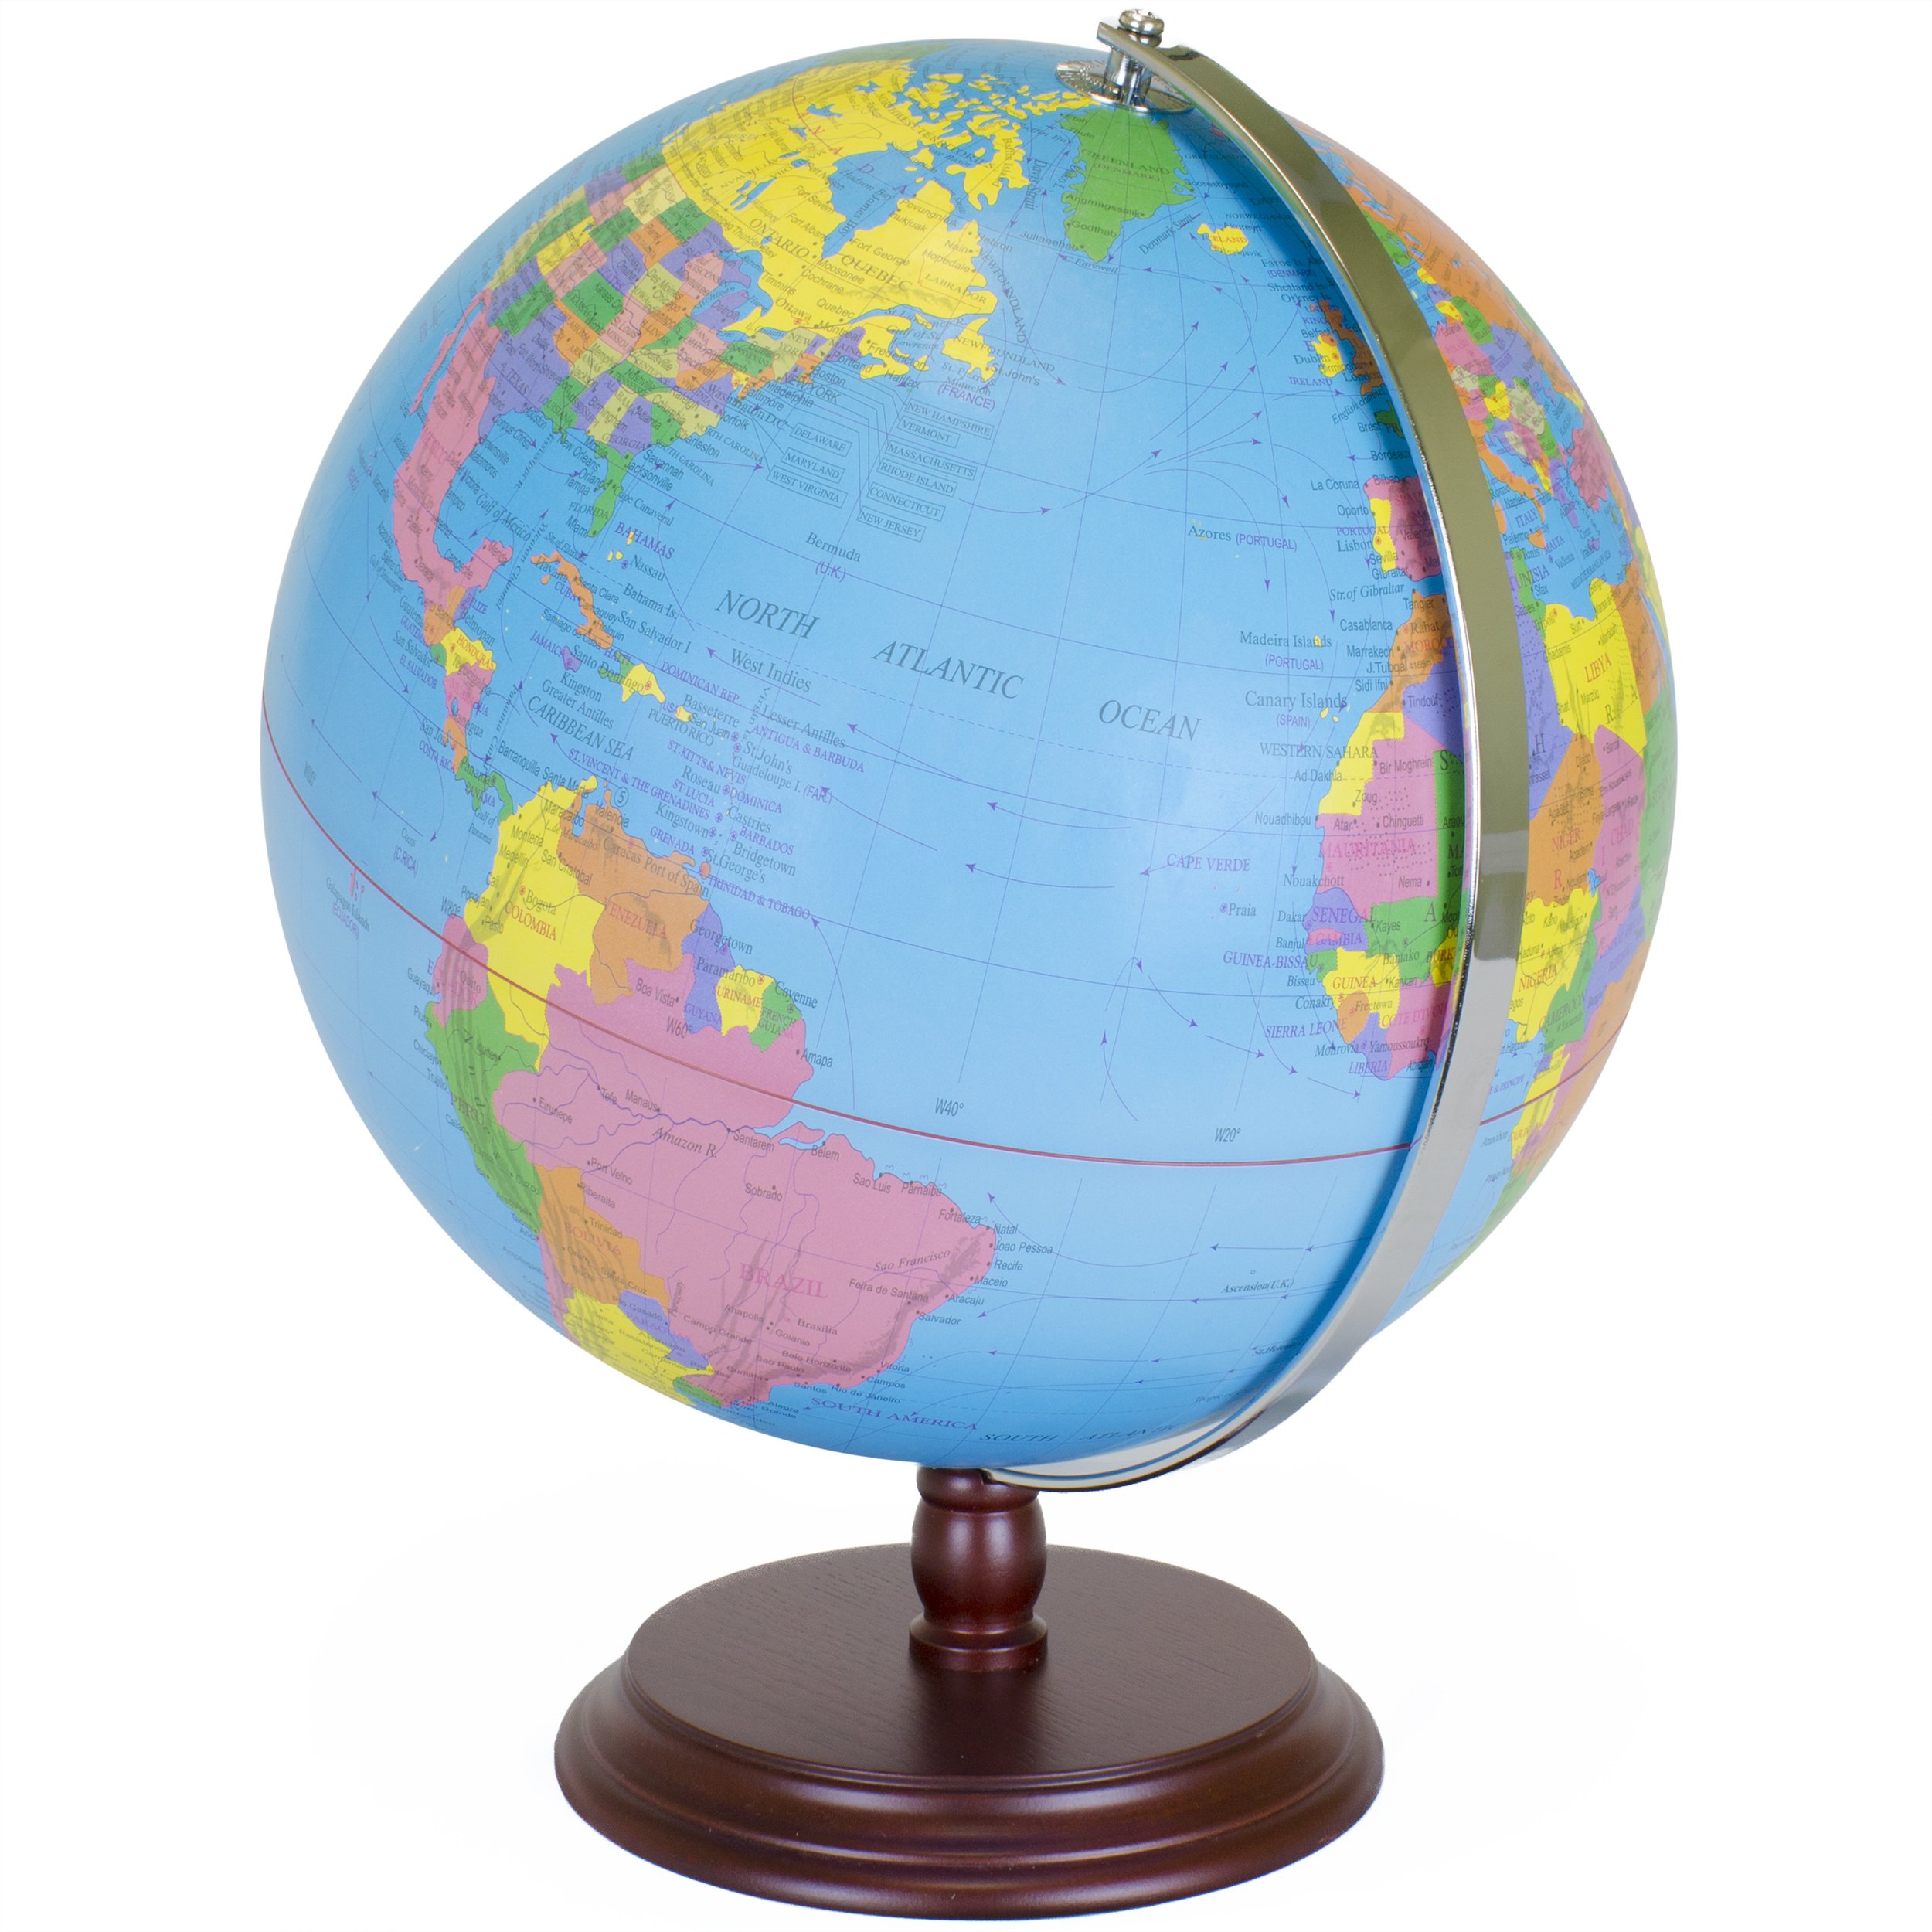 A map or globe